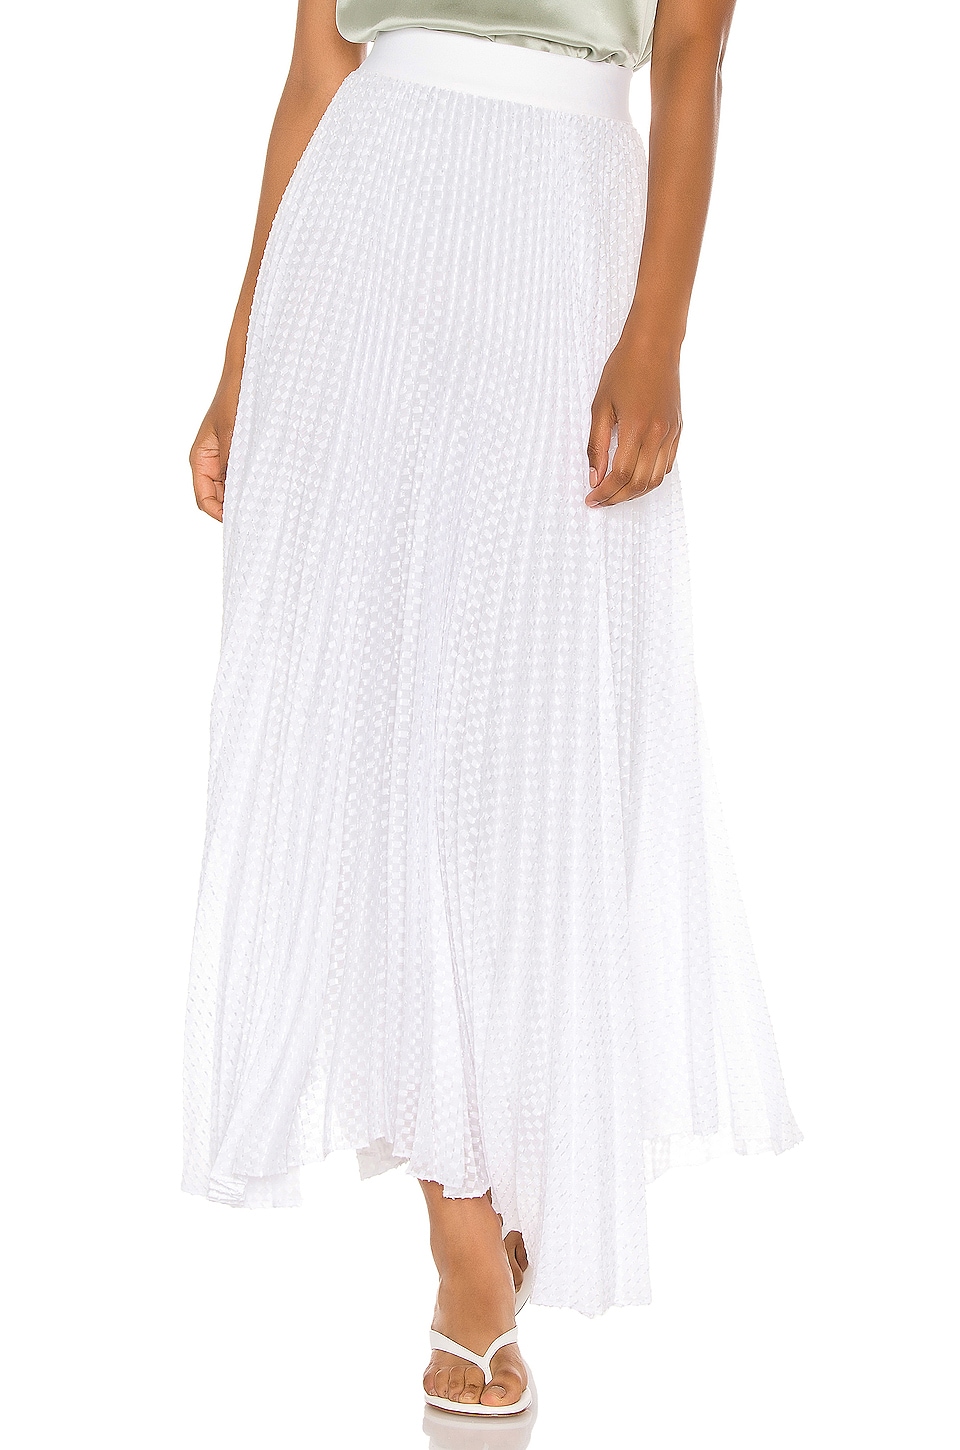 Alice + Olivia Katz Midi Skirt in White | REVOLVE